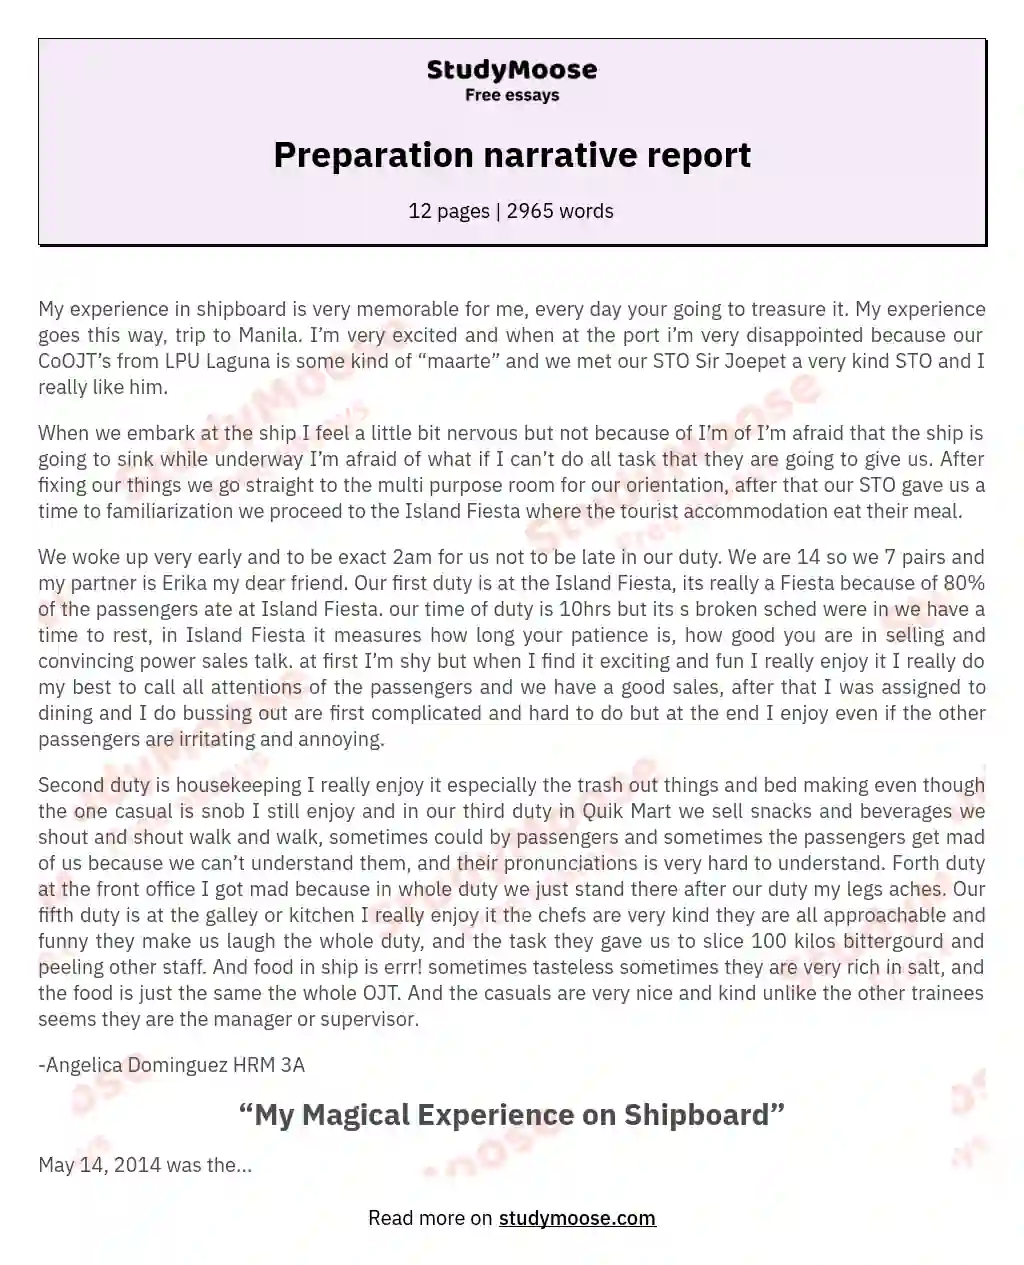 Preparation narrative report essay